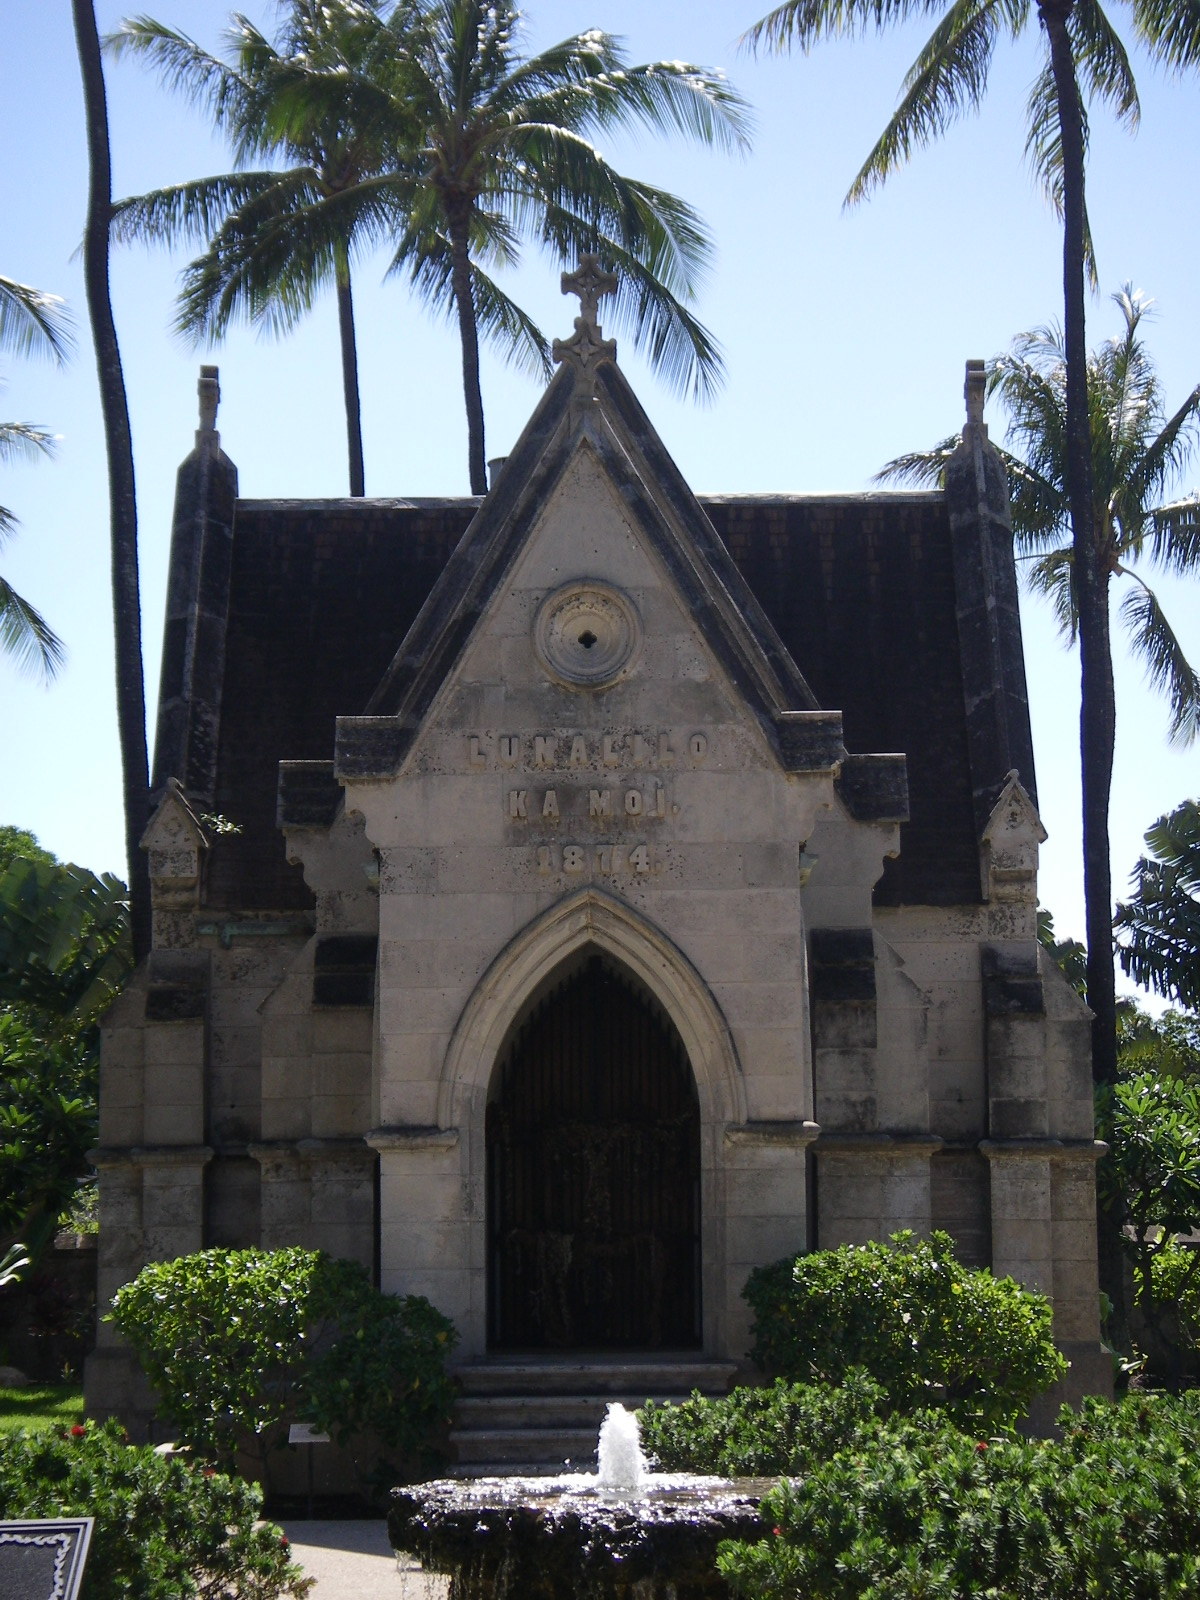 Lunalilo Mausoleum - Wikipedia